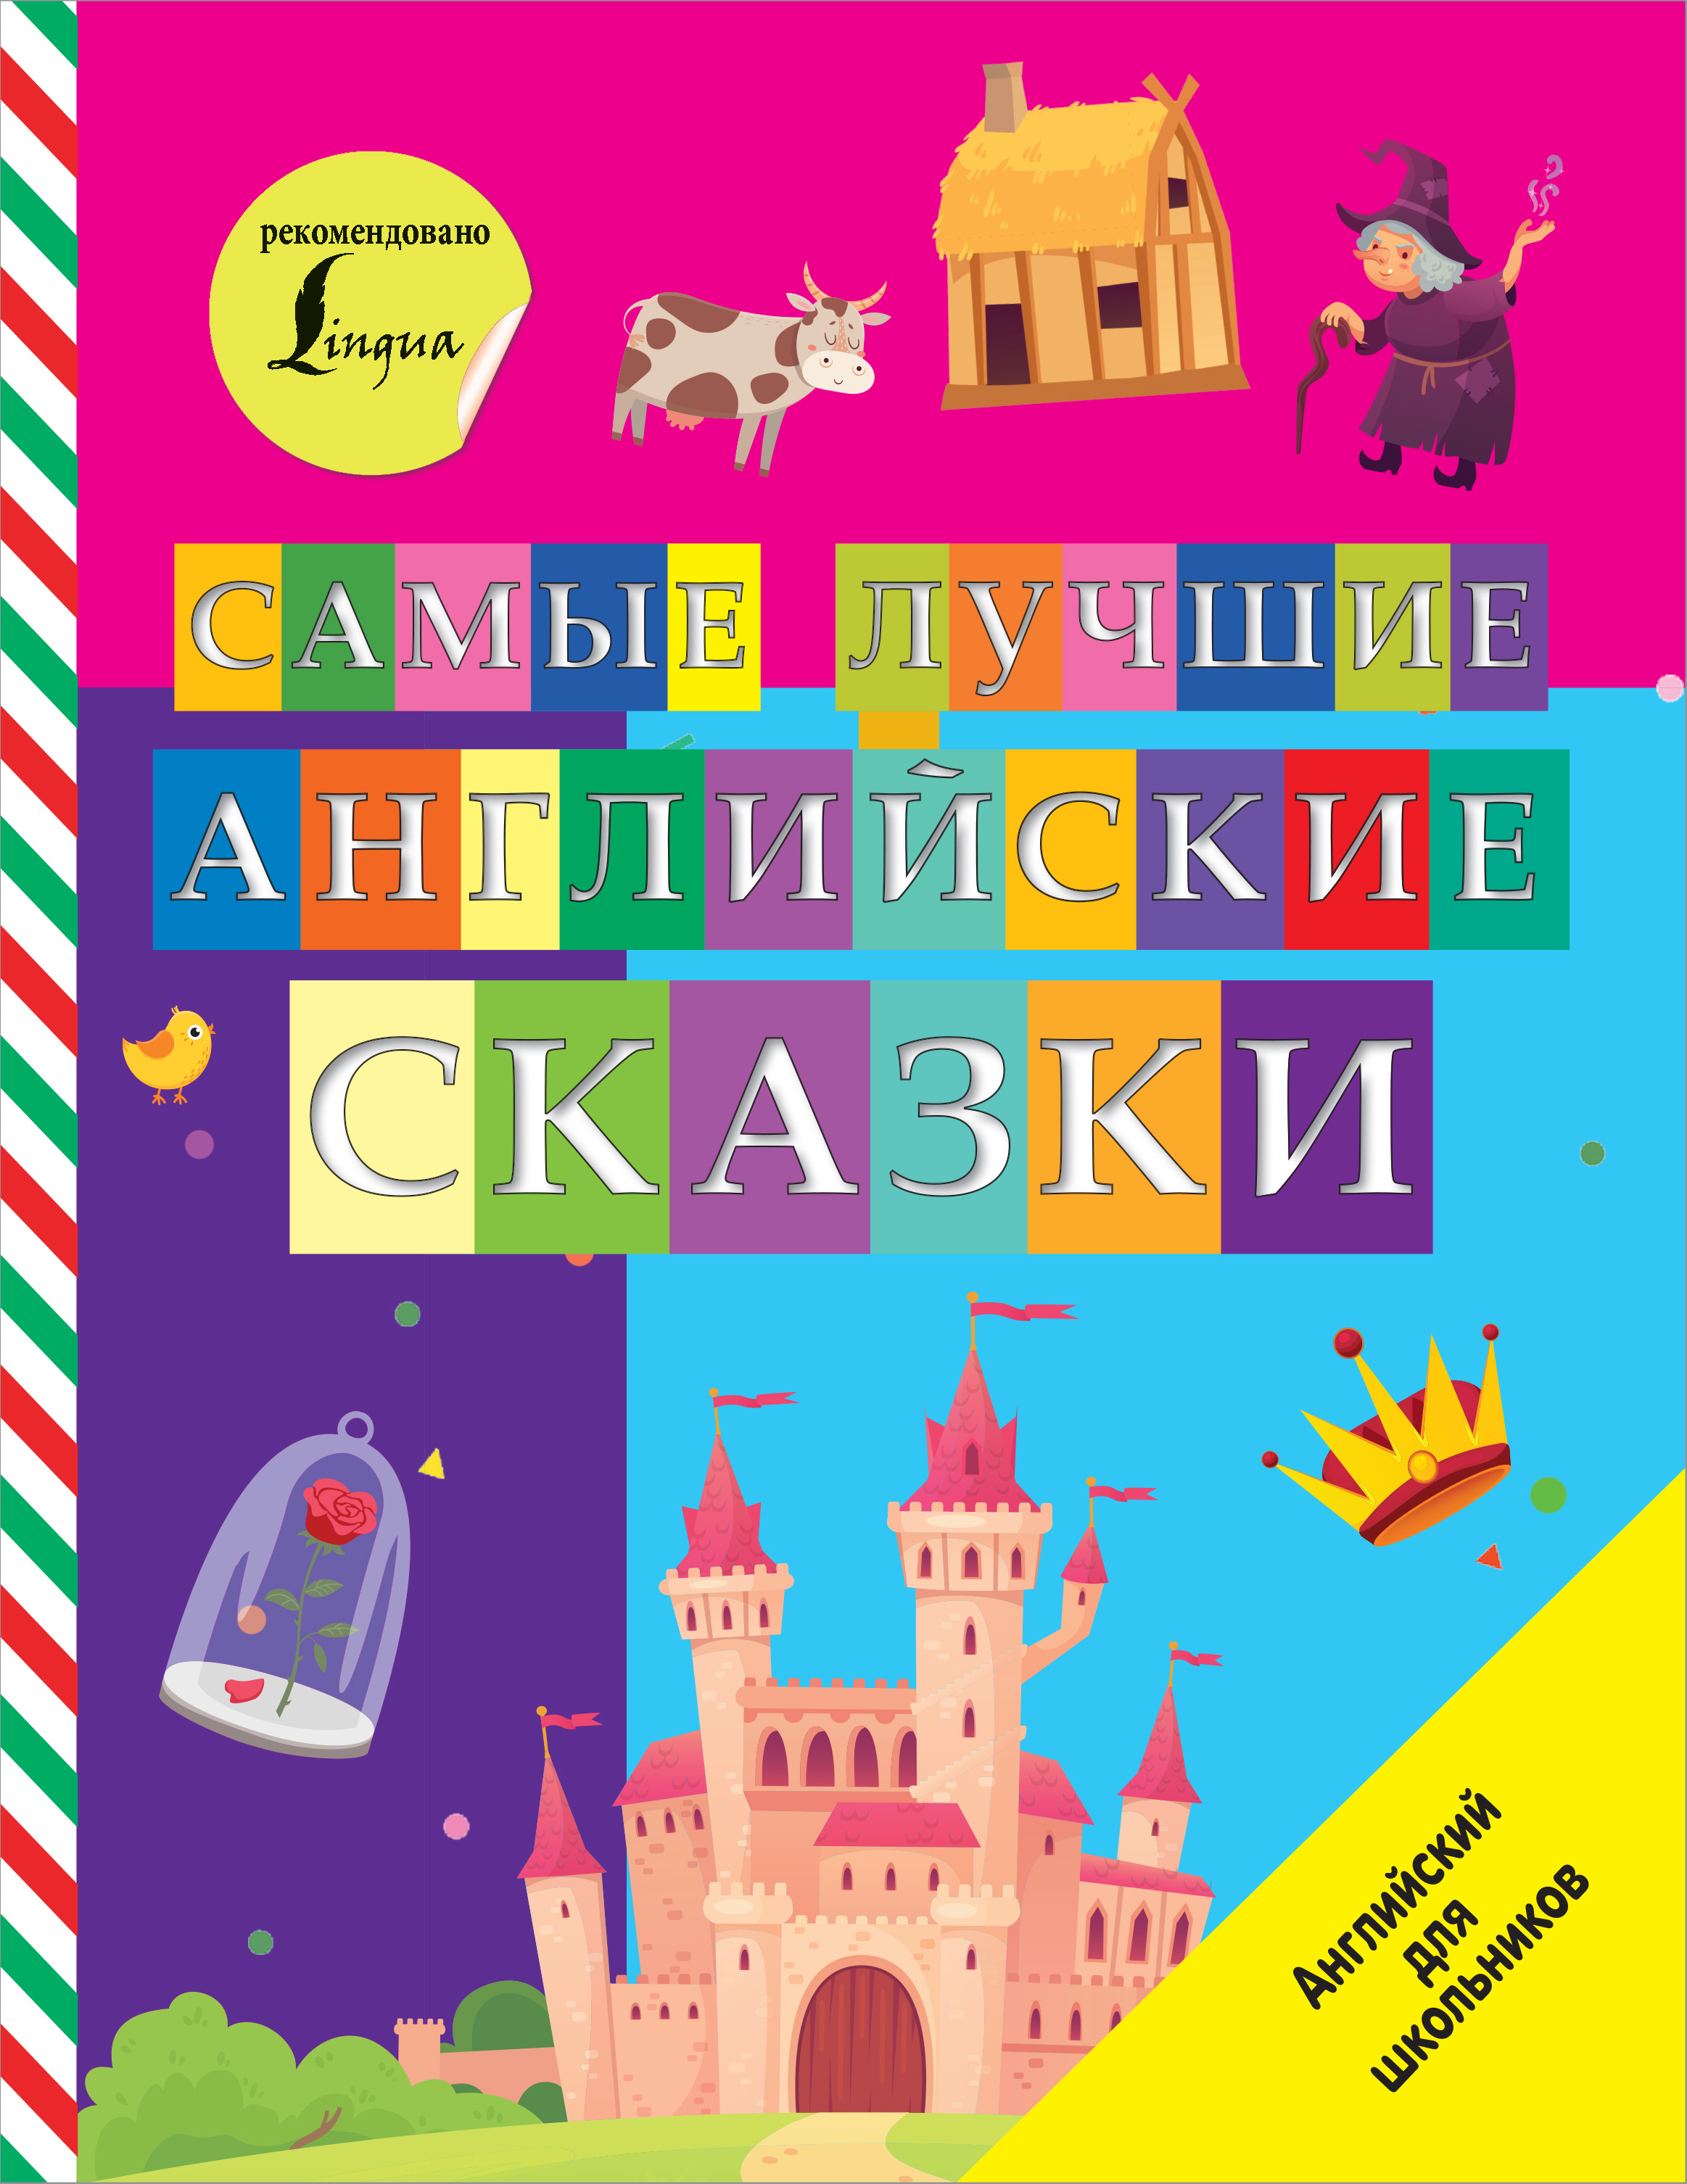 Самые лучшие английские сказки напарники на киргизском языке с русскими субтитрами